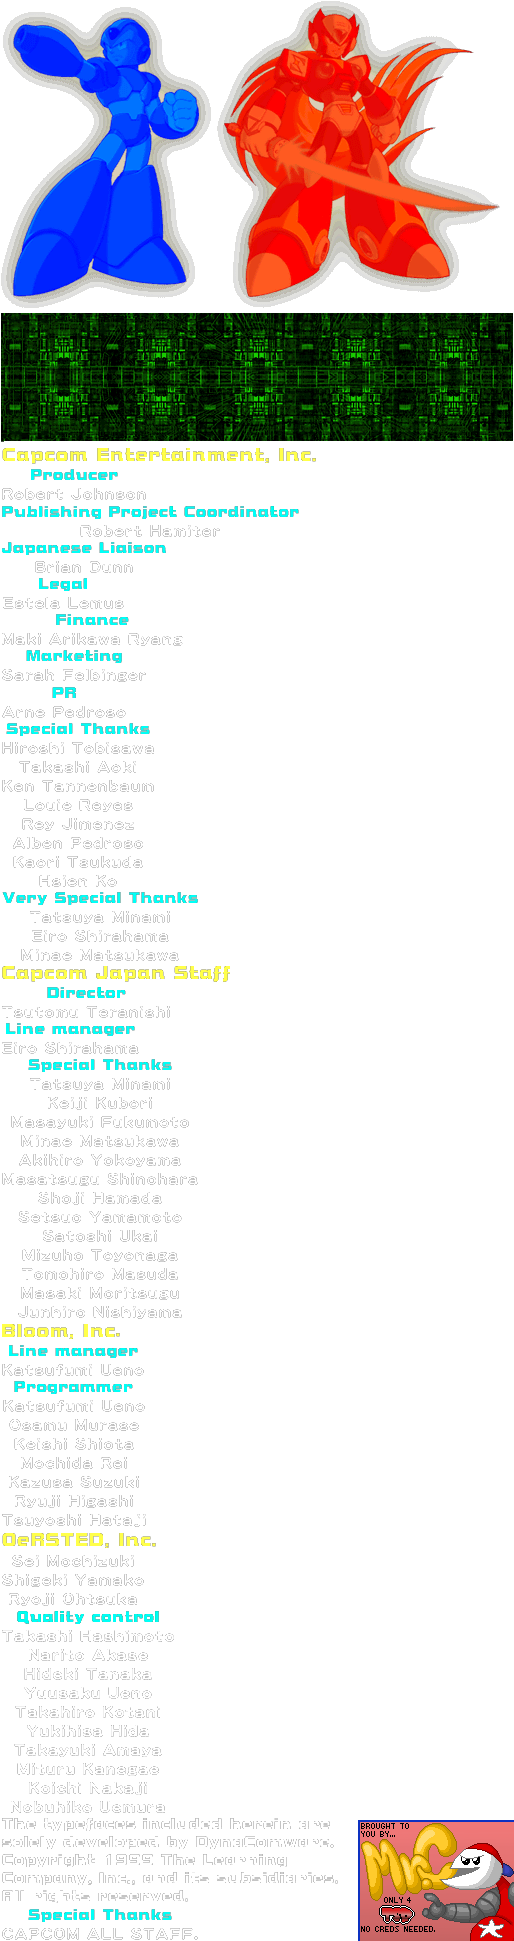 Mega Man X Collection - Credits